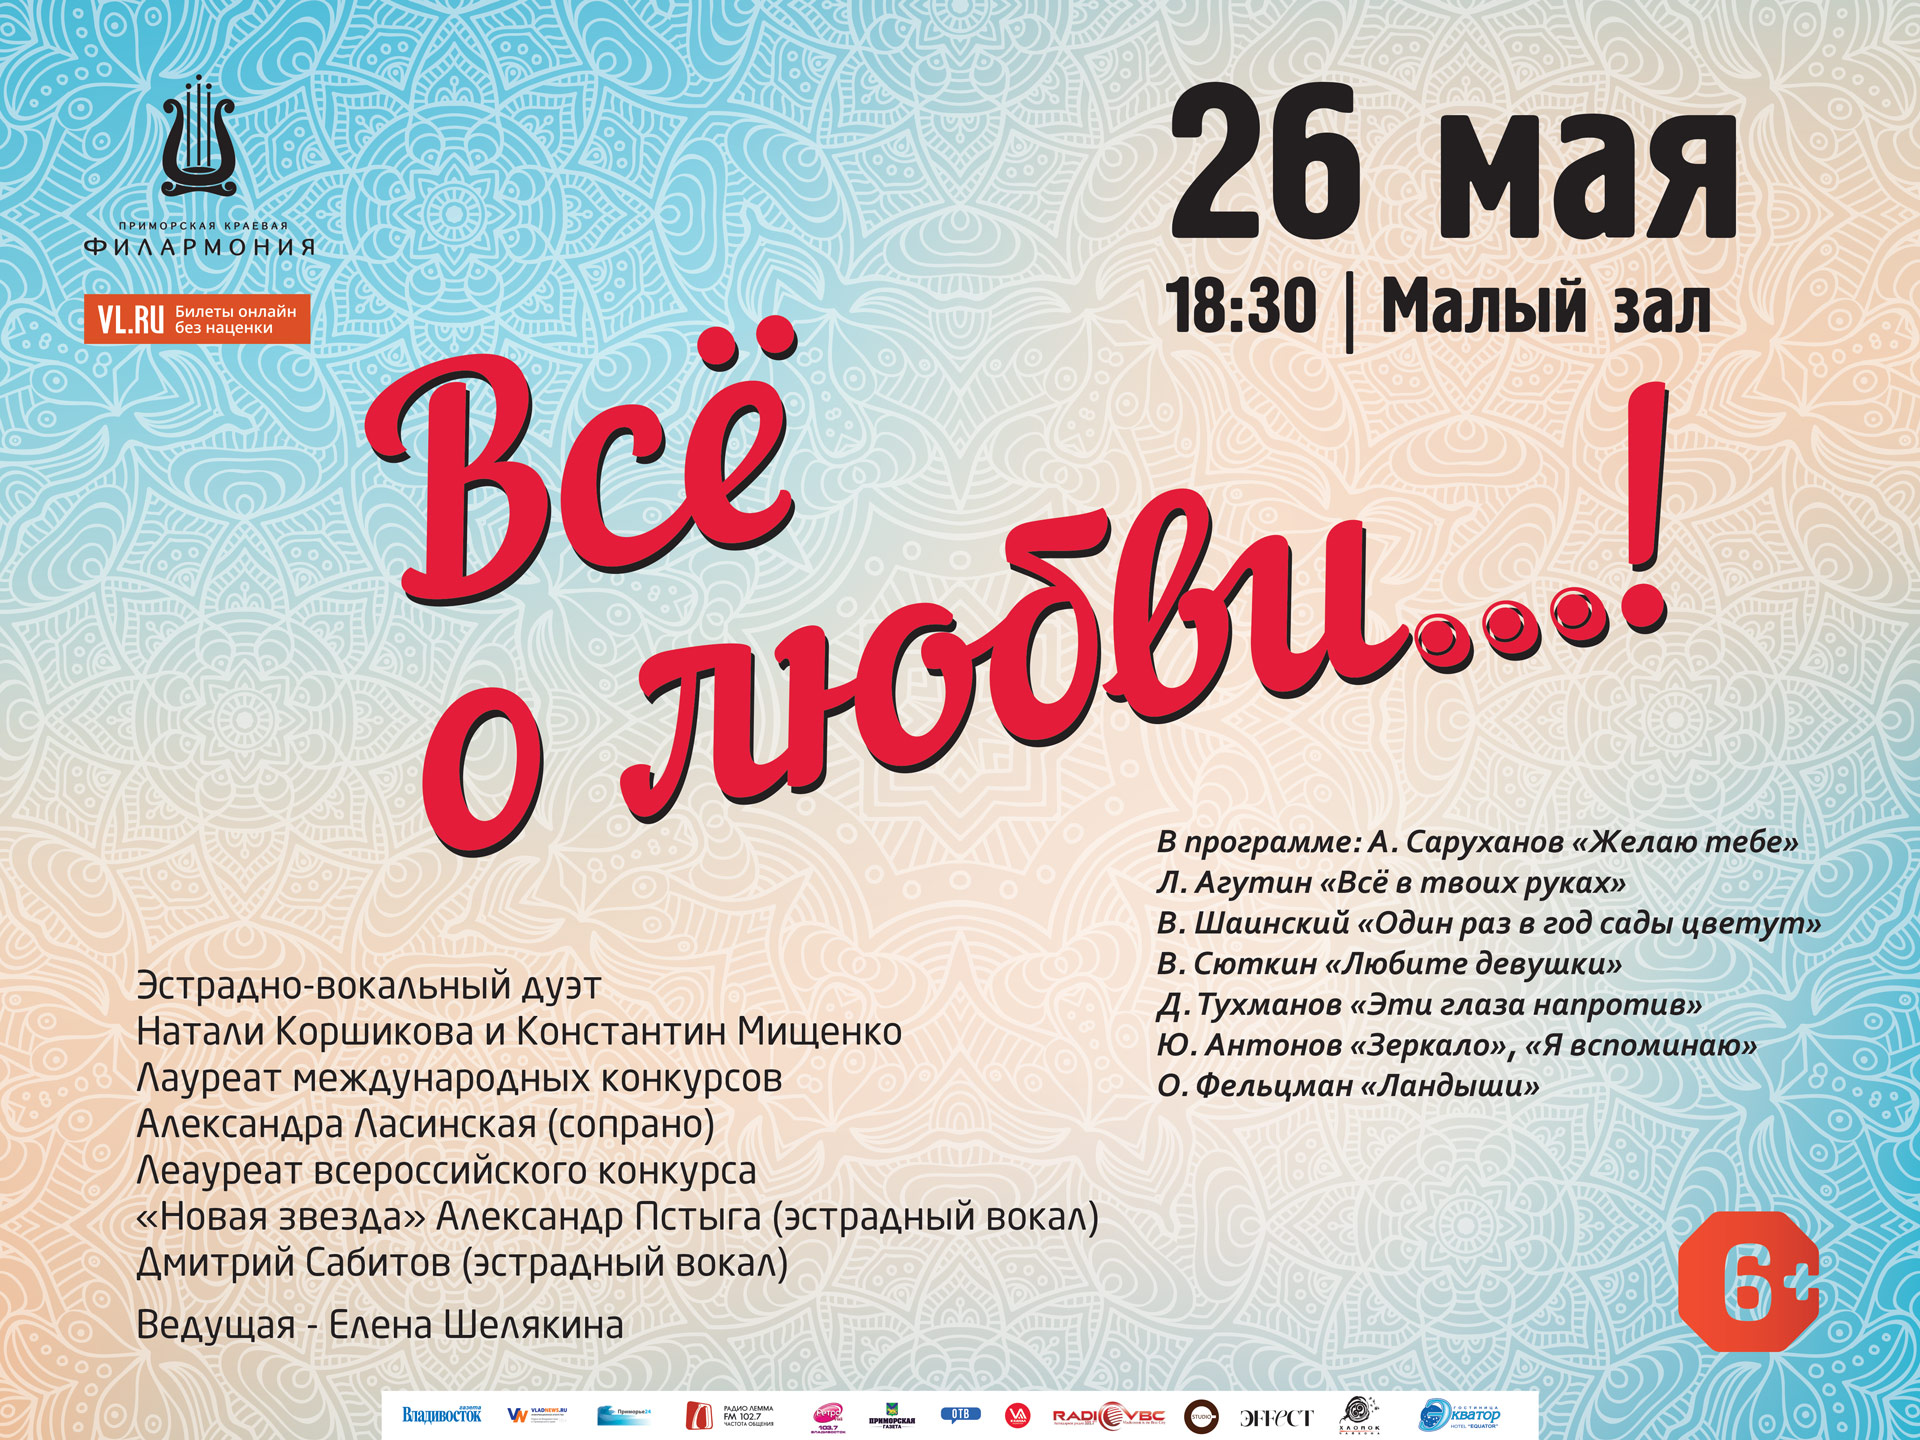 26 мая Малый зал Начало 18.30 Эстрадная концертная программа «Всё о любви…!»»